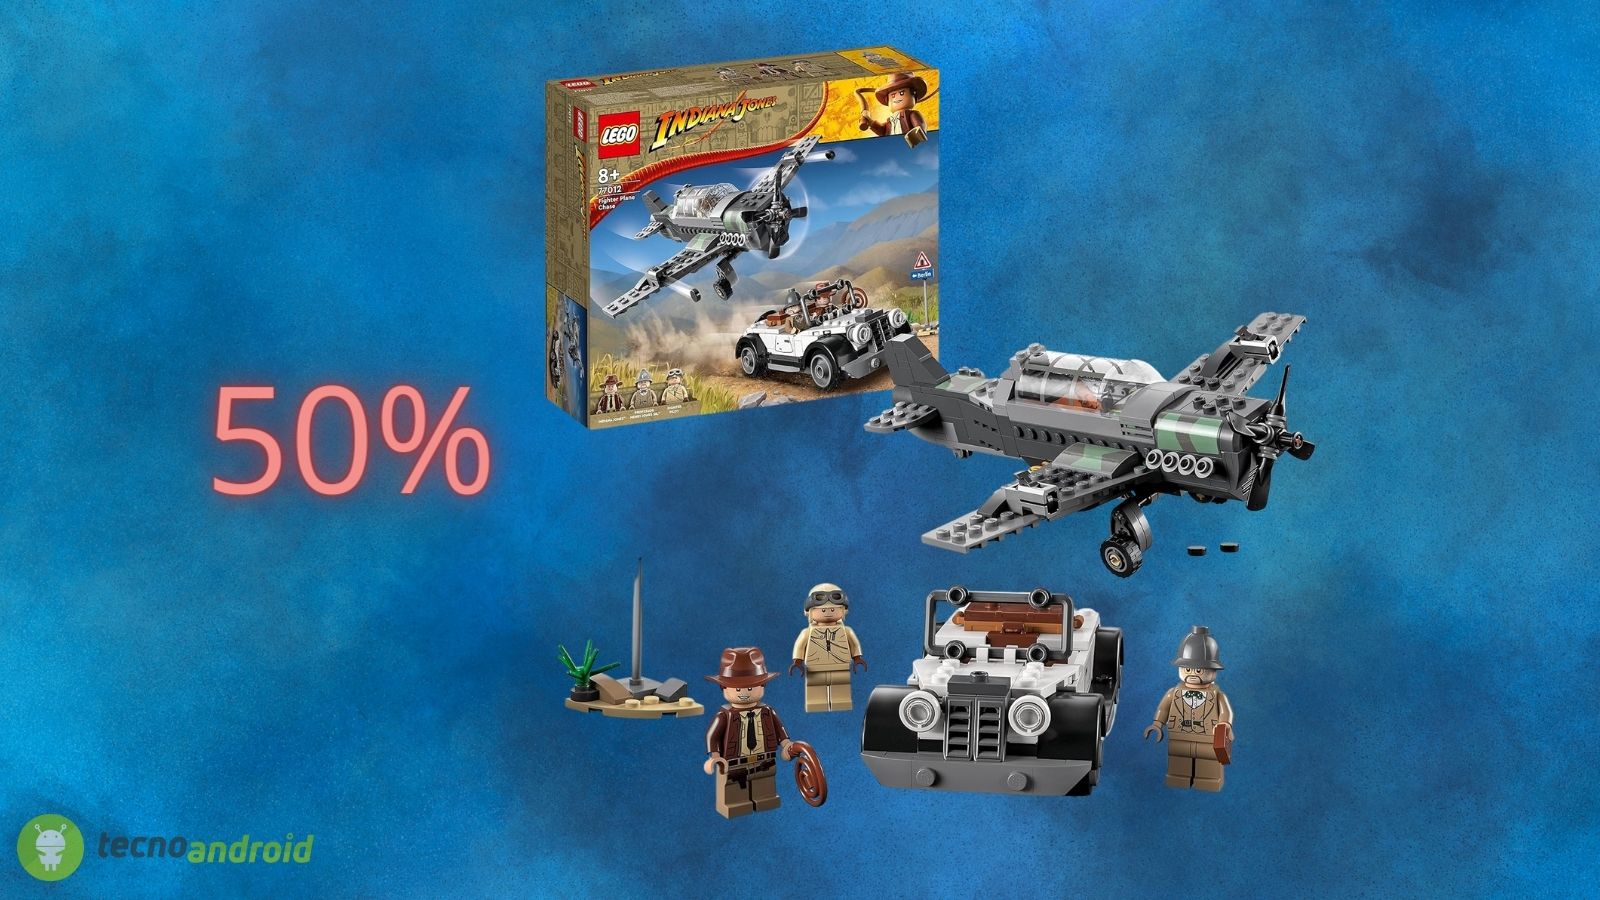 FUORITUTTO LEGO per il Black Friday di Amazon: prezzi al 50%